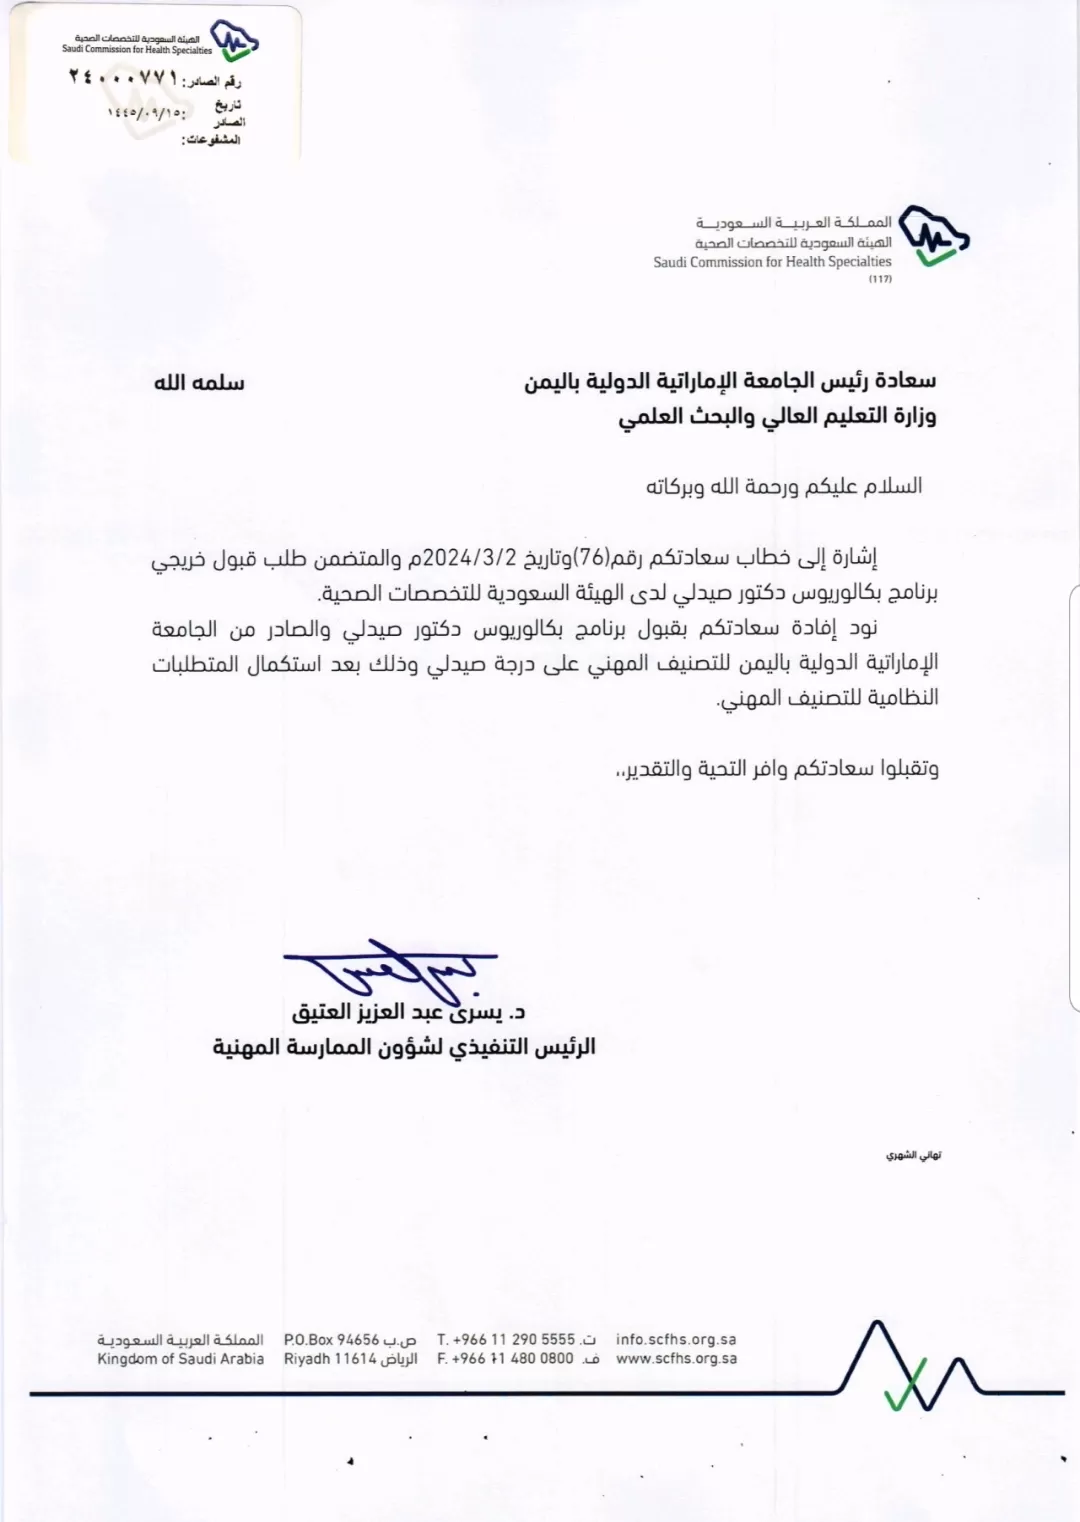 الجامعة الإماراتية الدولية تحصل على إعتماد رسمي من الهيئة السعودية للتخصصات الصحية وعضوية الإتحاد الدولي للصيادلة fip